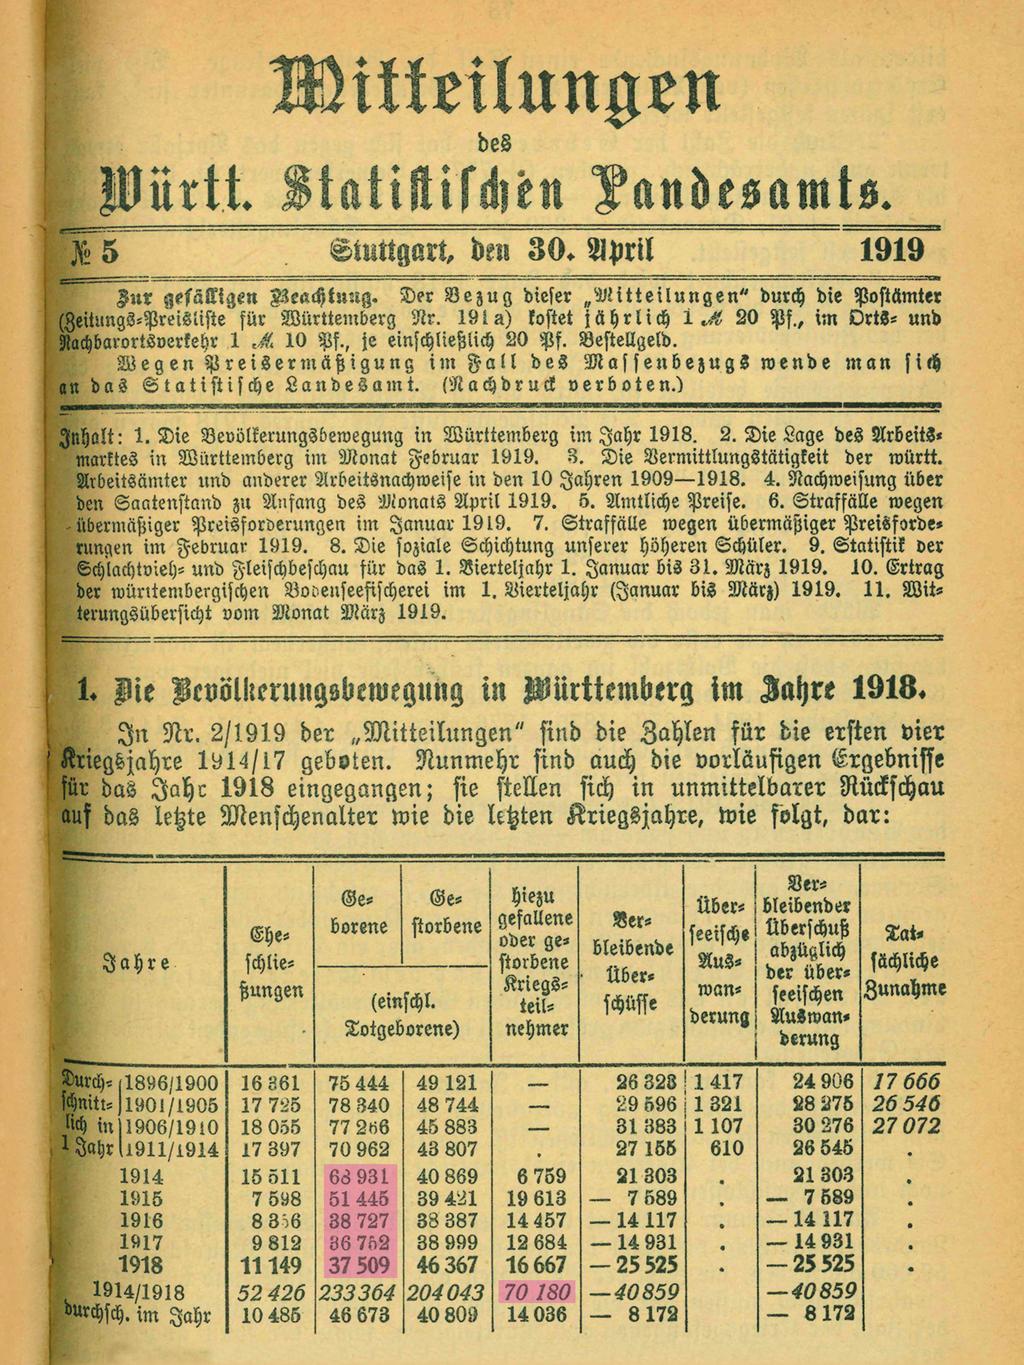 Quelle: Mitteilungen des Württembergischen Statistischen